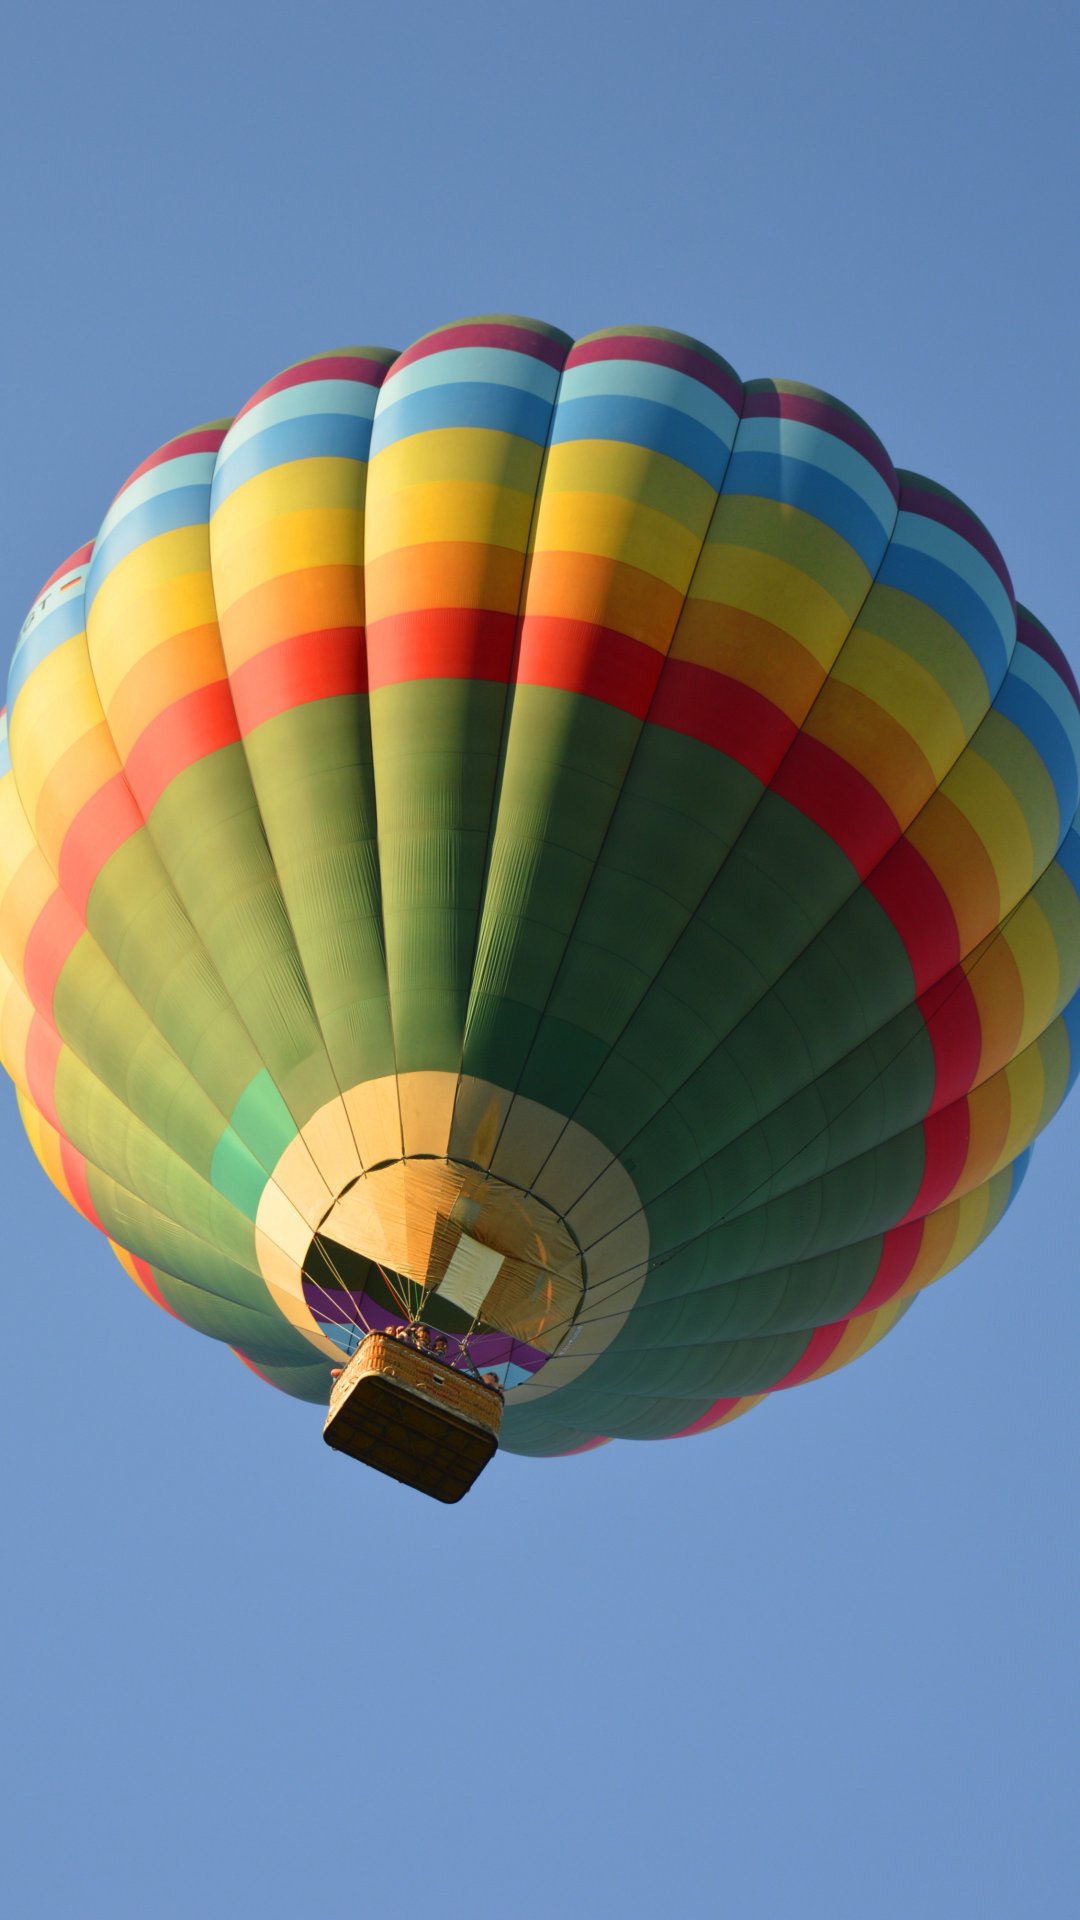 天空中的热气球唯美摄影高清,高清图片,手机壁纸